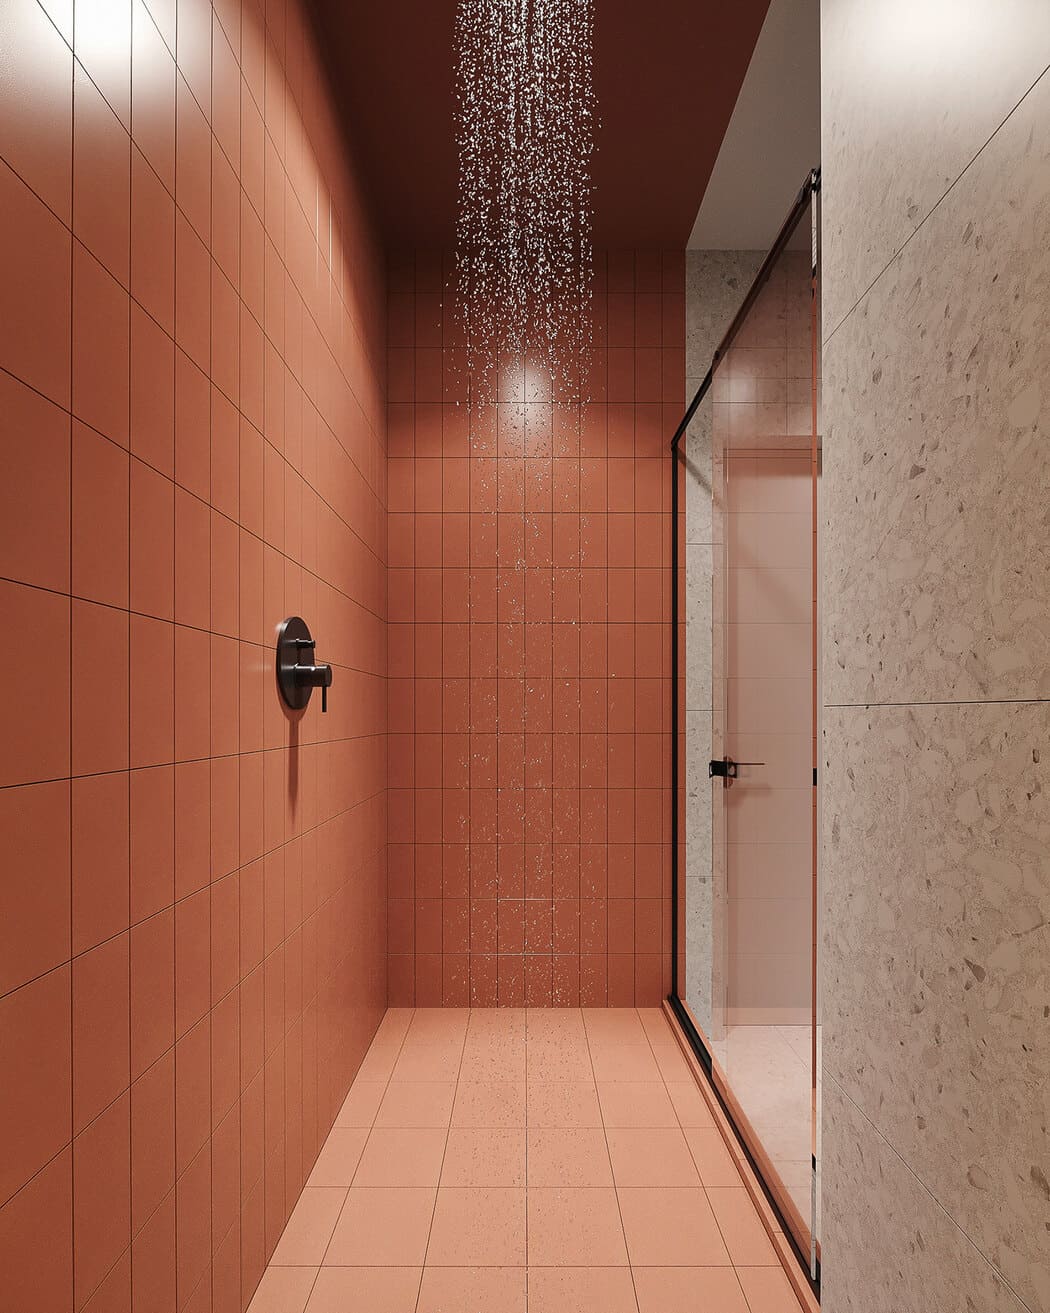 Минималистичная квартира с контрастными акцентами в стиле минимализма, ванная, фото 4